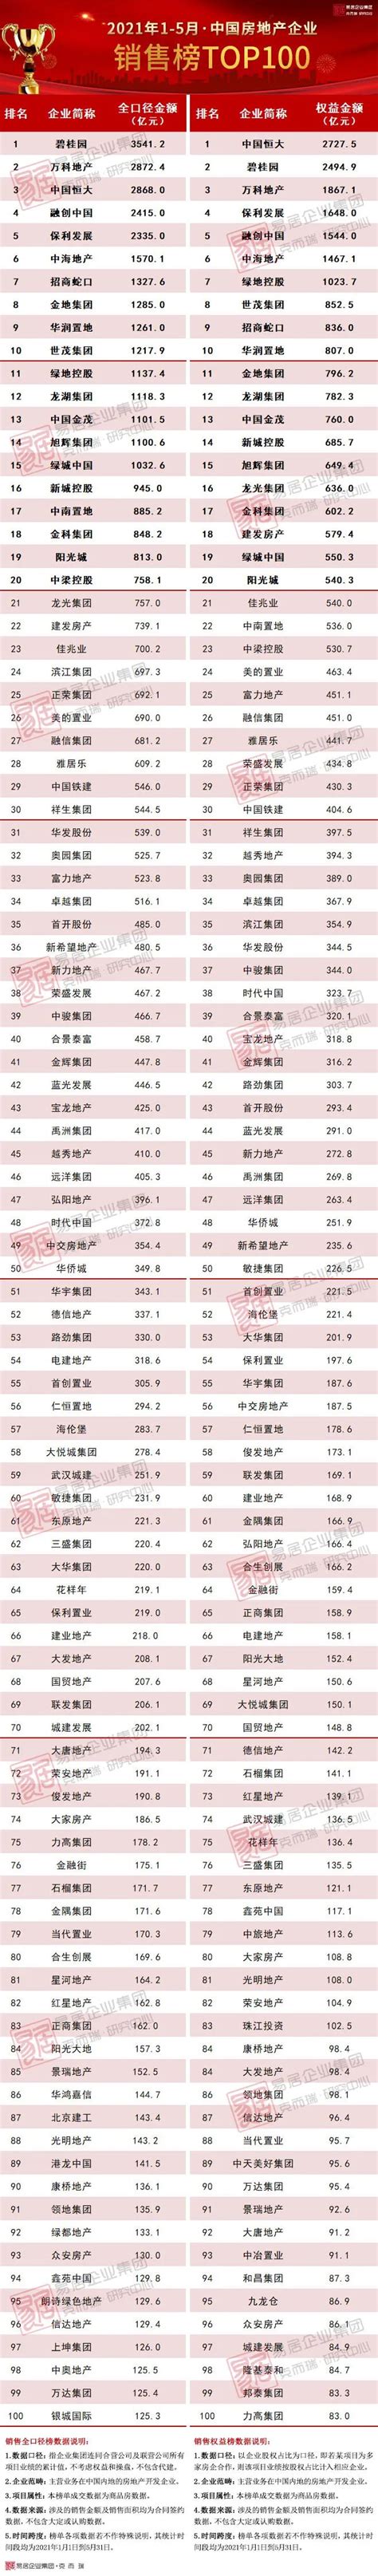 2021年1-5月中国房地产企业销售TOP100排行榜_新浪财经_新浪网